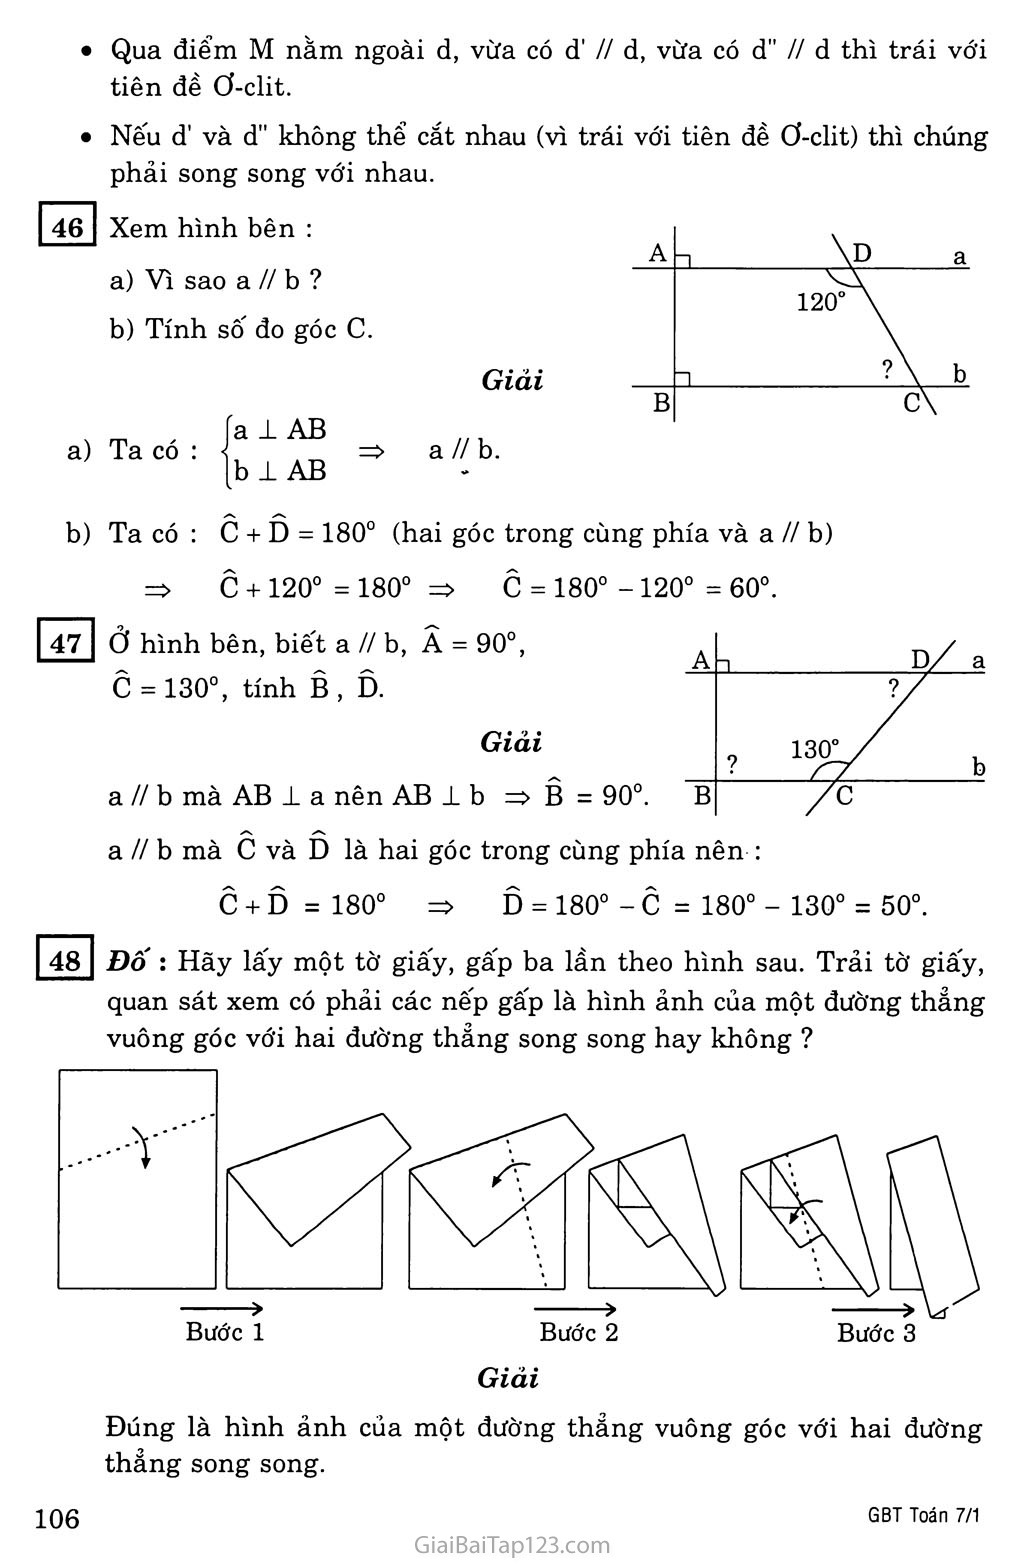 §6. Từ vuông góc đến song song trang 4